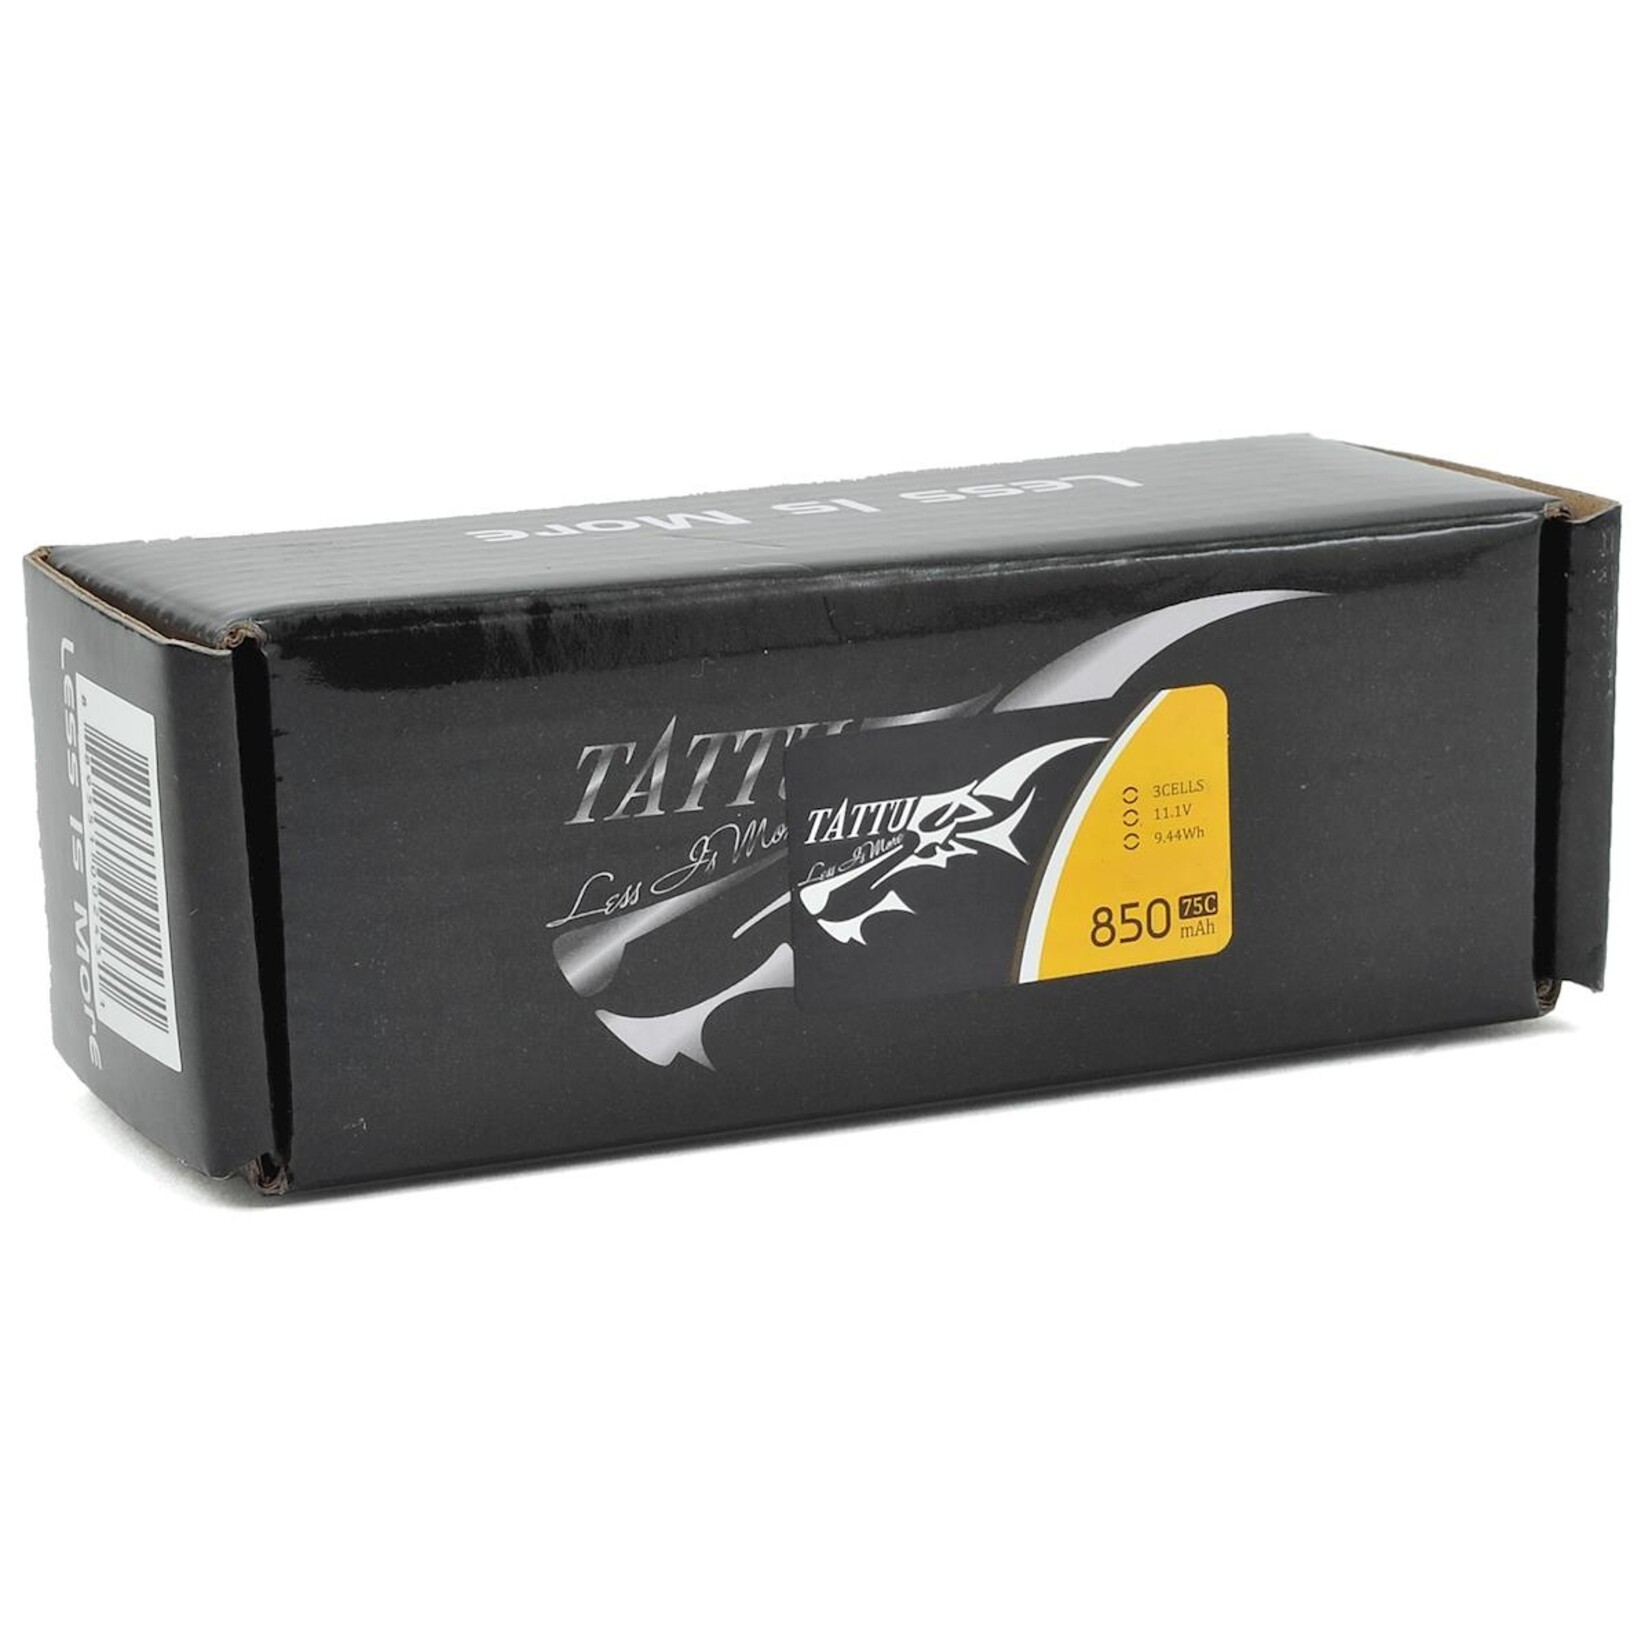 Tattu Tattu 3S LiPo Battery 75C (11.1V/850mAh) w/XT-60 Connector #TAA8503S75XT6